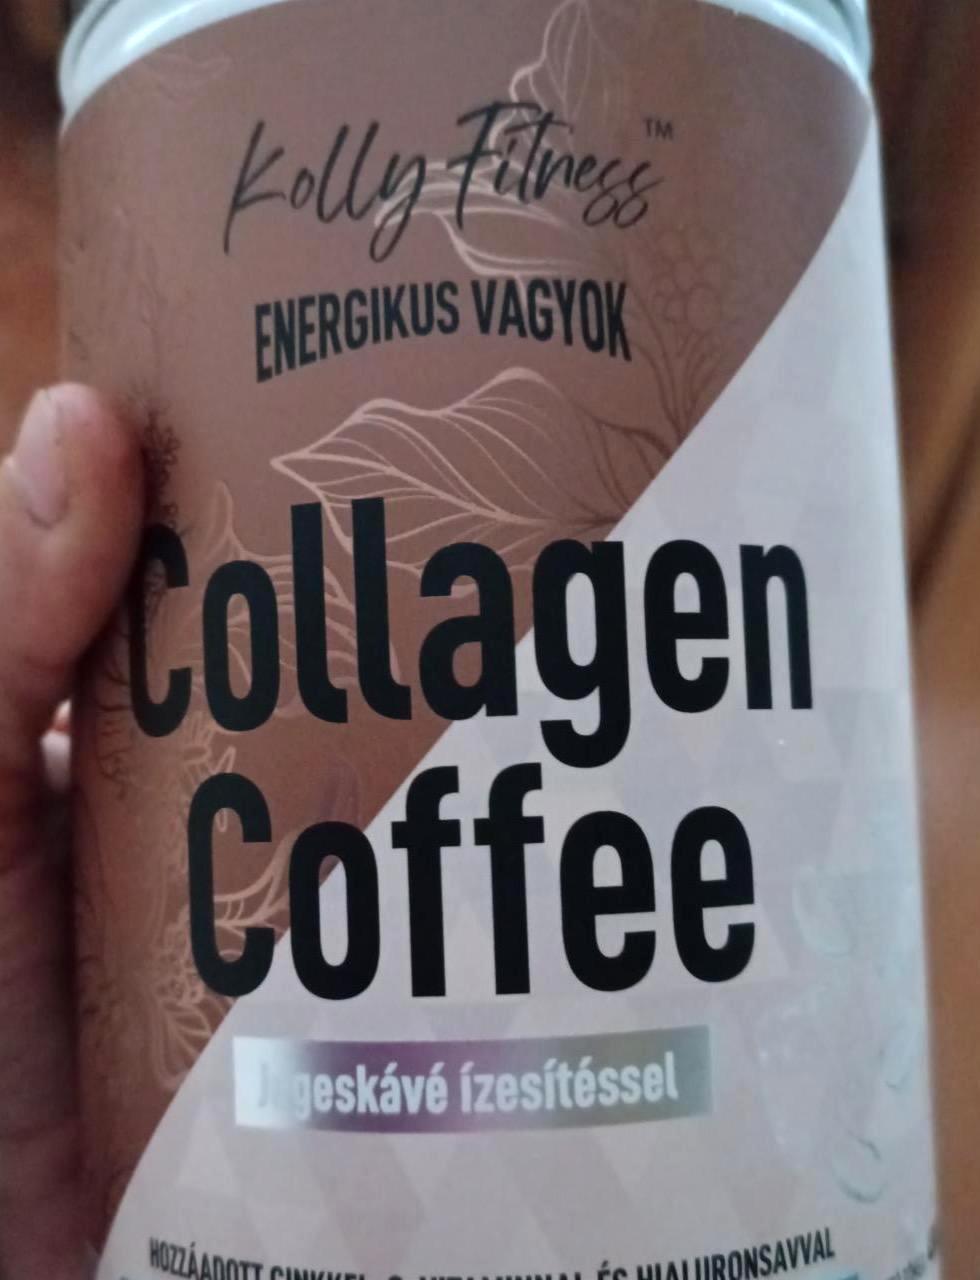 Képek - Collagen Coffee Jegeskávé ízesítéssel Kolly Fitness